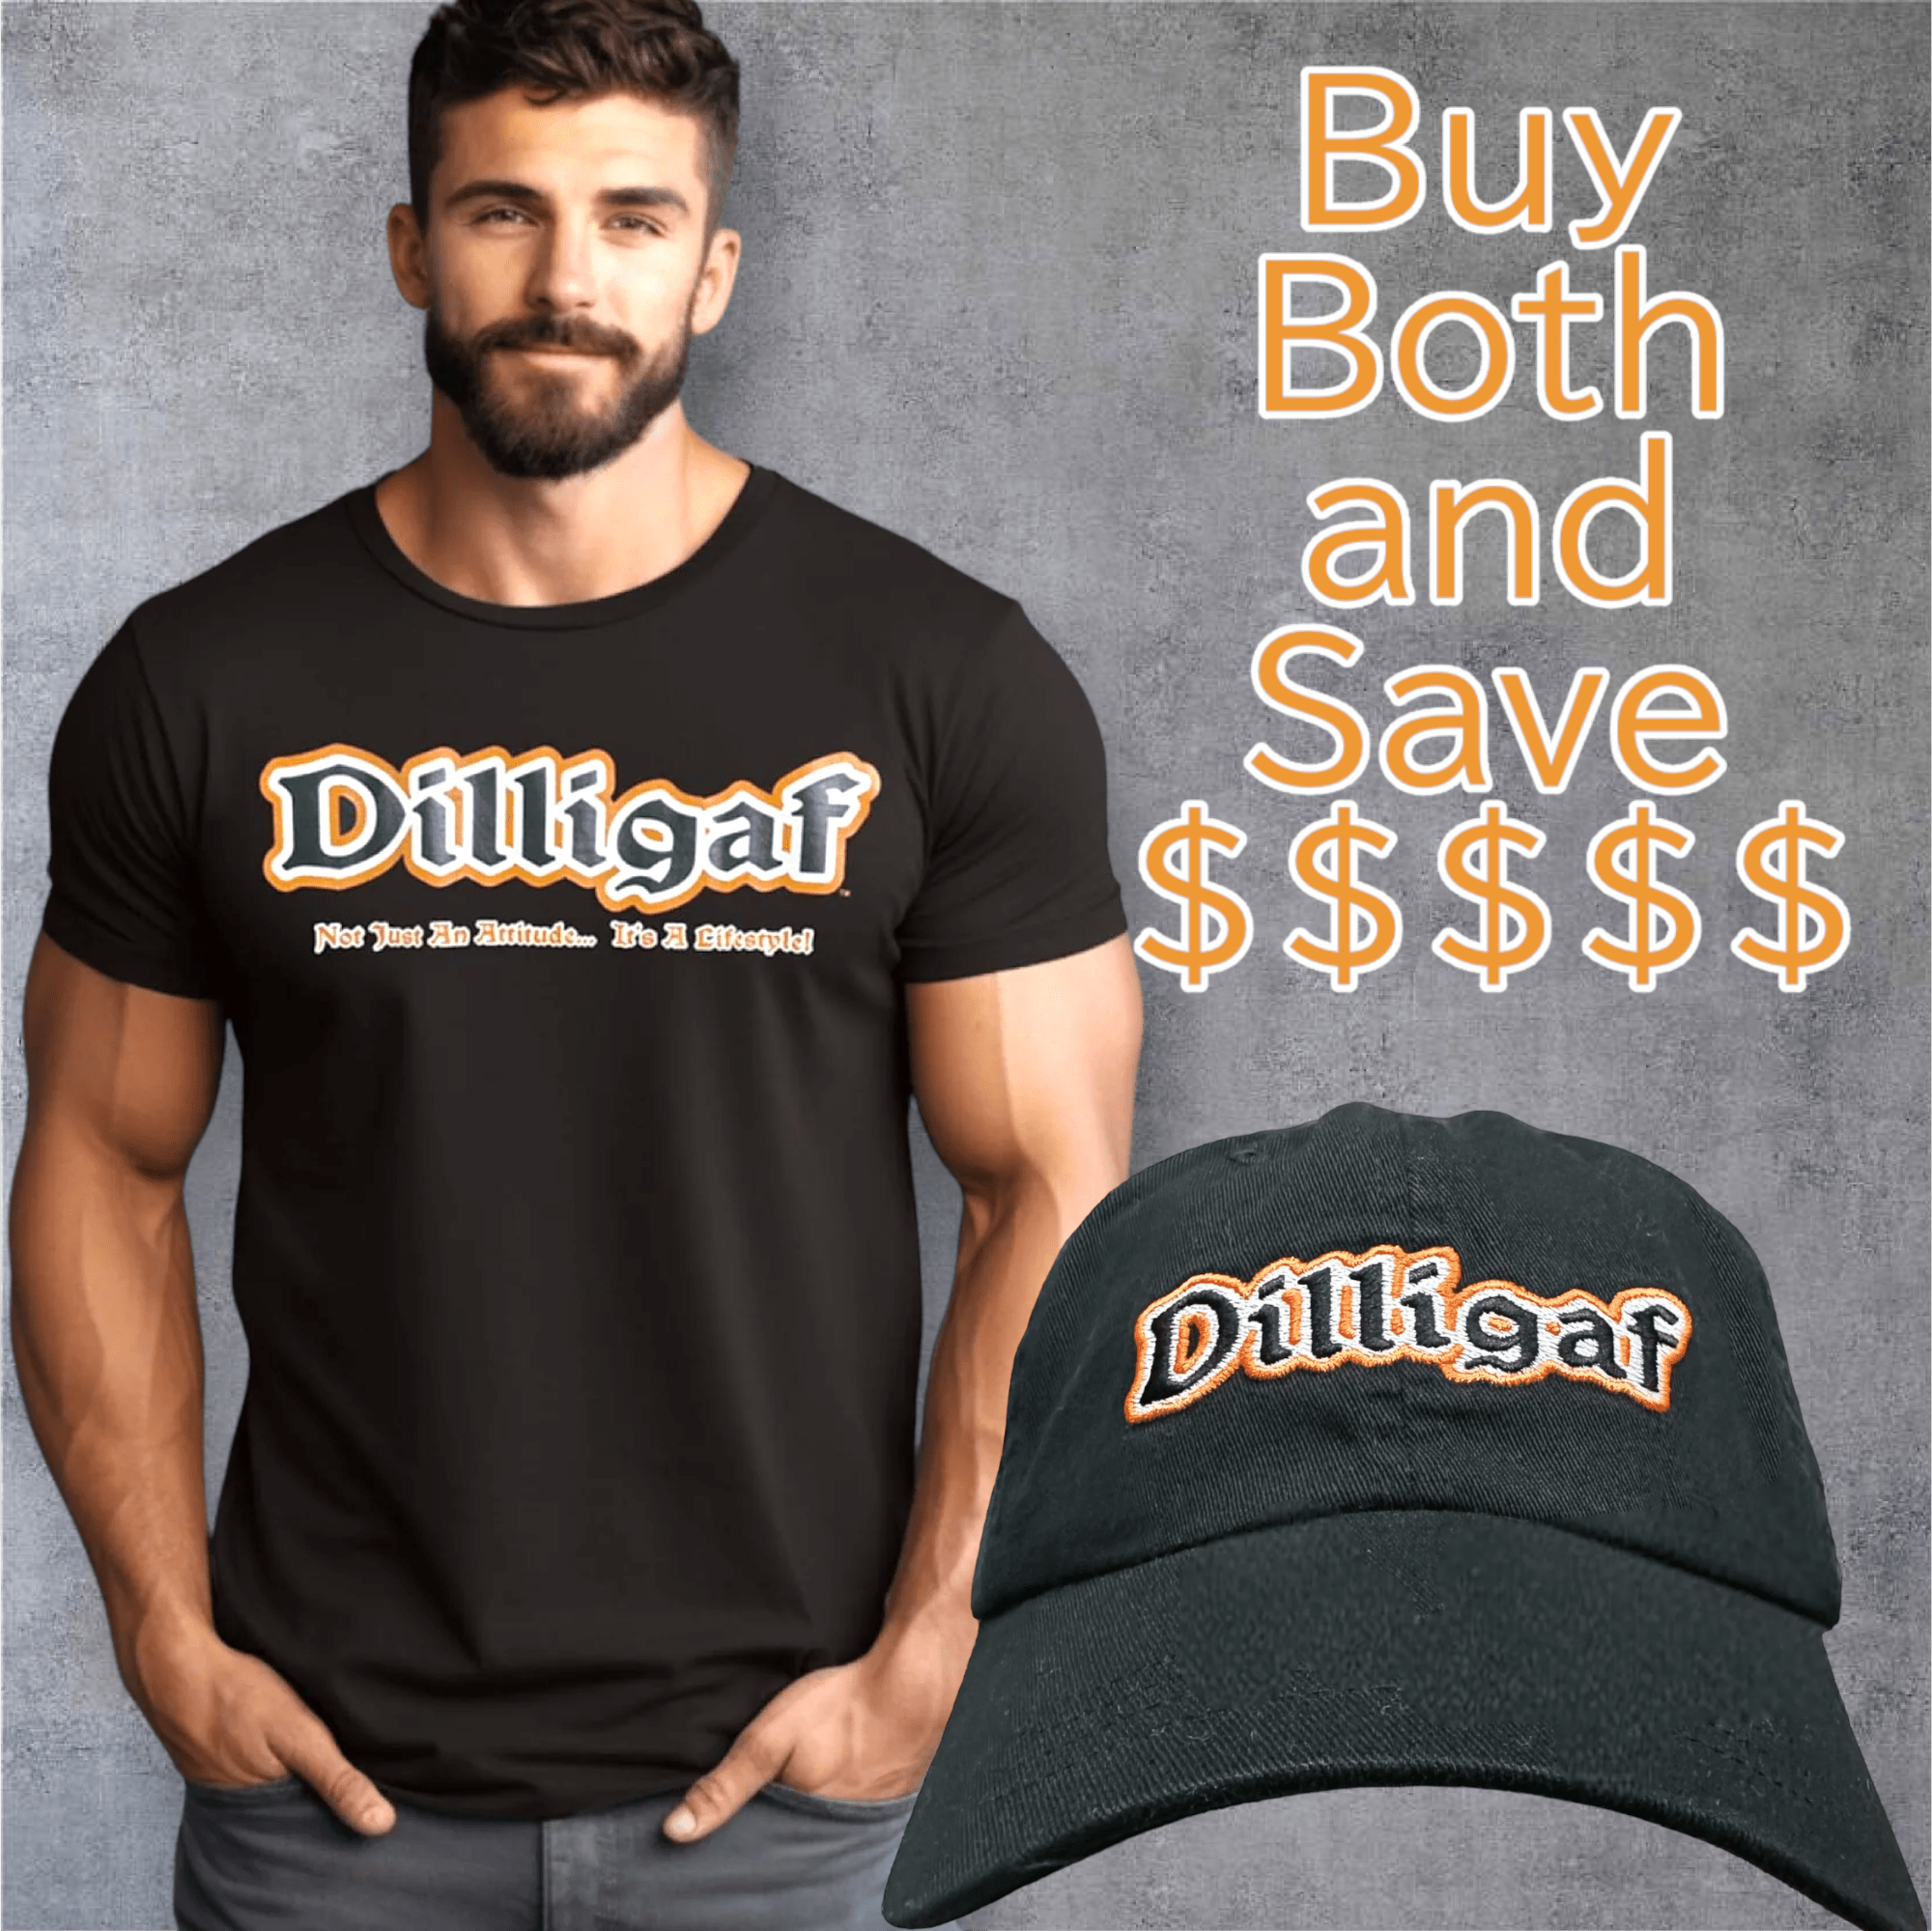 The Dilligaf OG T-shirt and Adjustable Hat Bundle